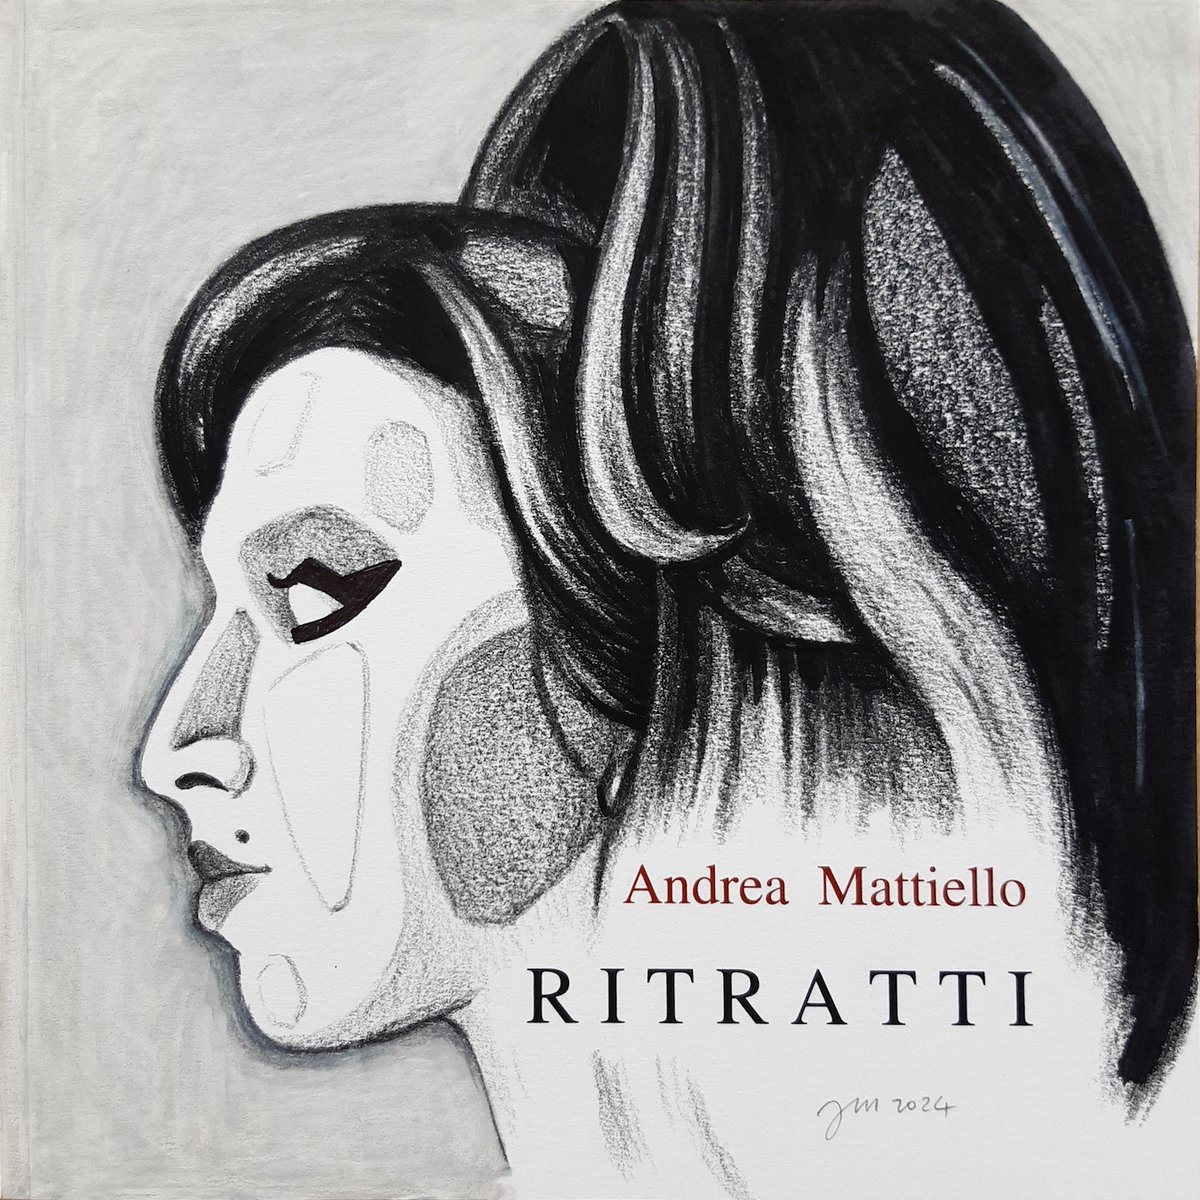 andrea mattiello : 'RITRATTI - Catalogo opera' andreamattiello.blogspot.com/2024/03/ritrat…… 

#amywinehouse #ritratti #contemporaryart #popart #icon